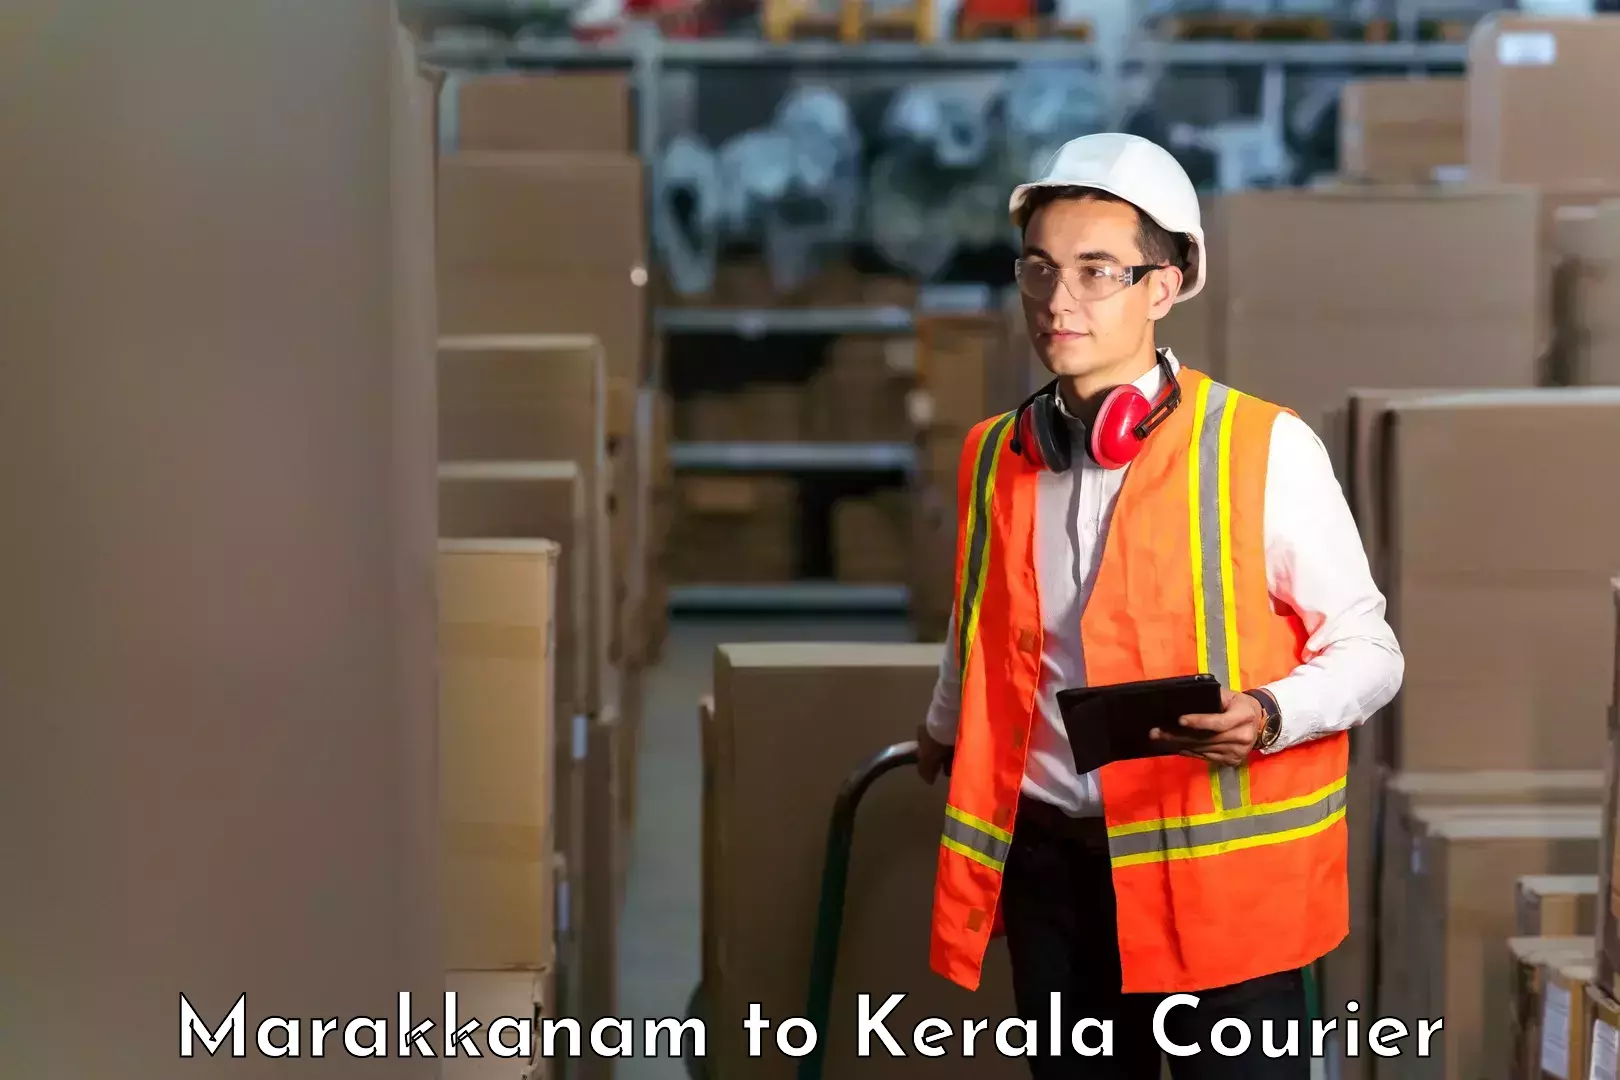 High-speed logistics services Marakkanam to Kunnamkulam